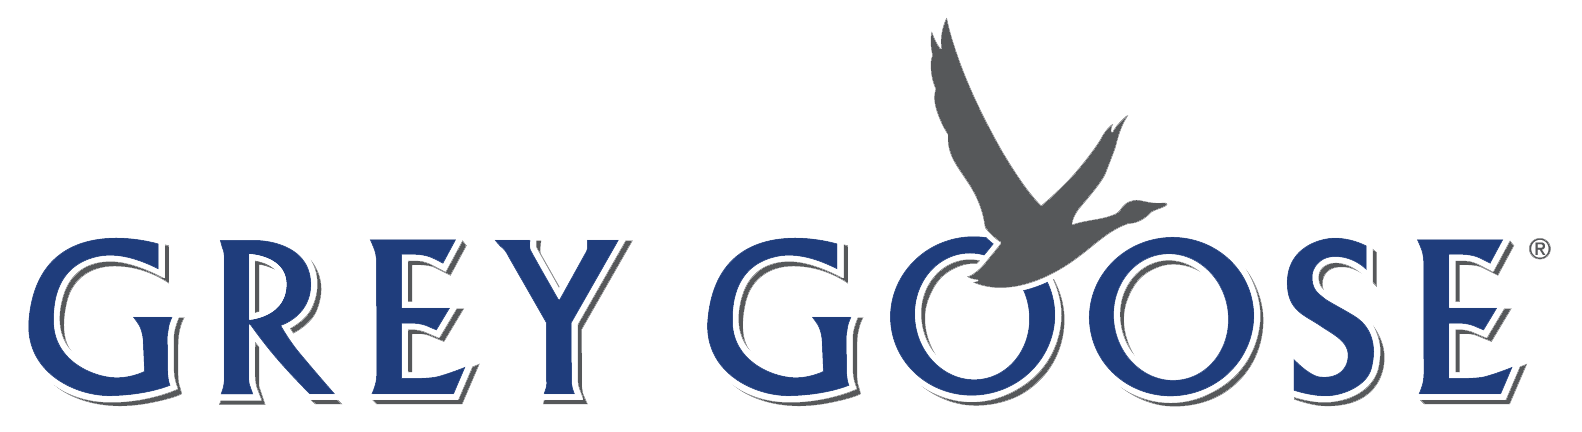 greygoose-logo.png